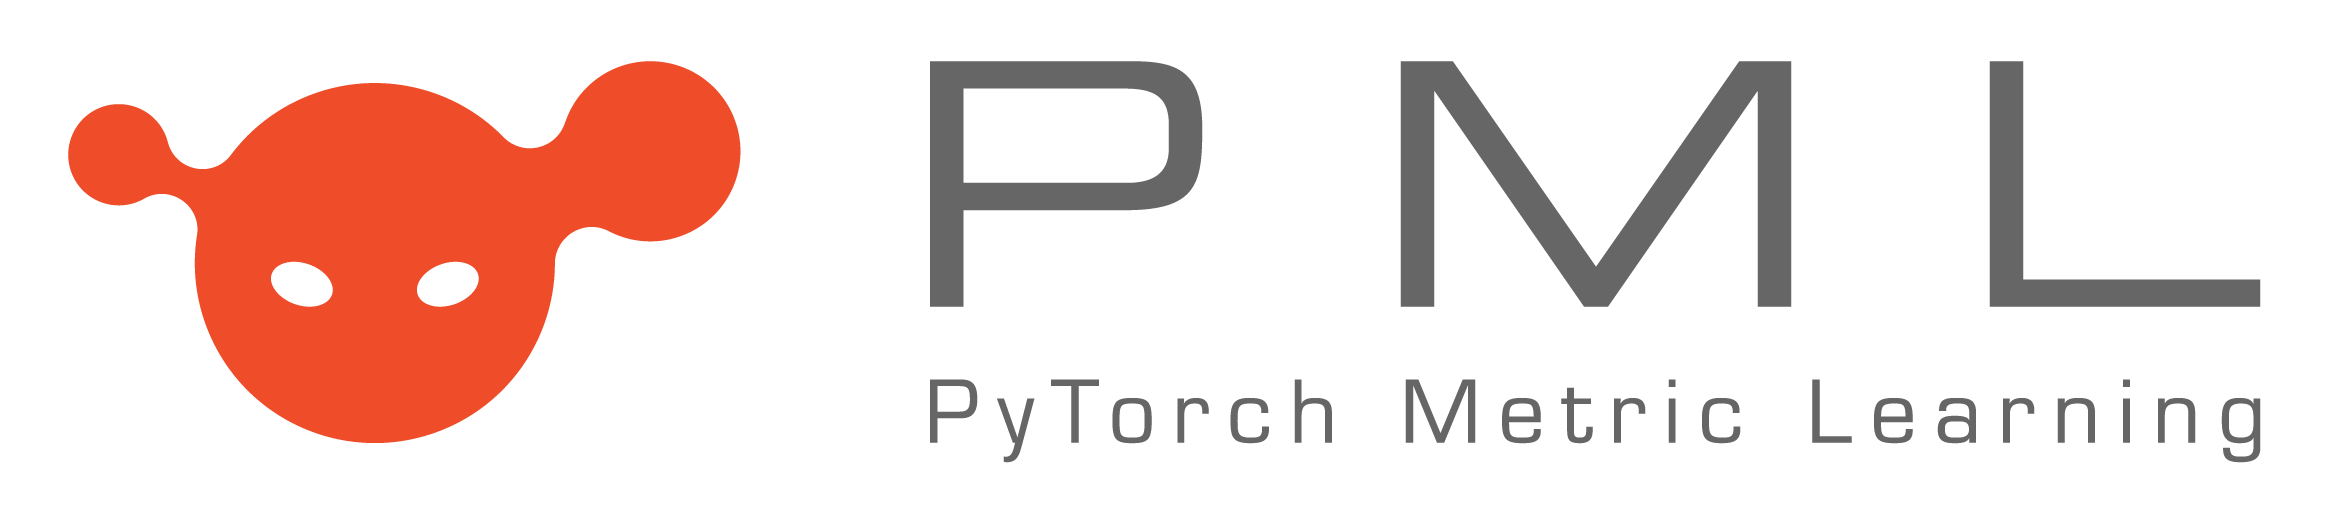 pml_logo.png